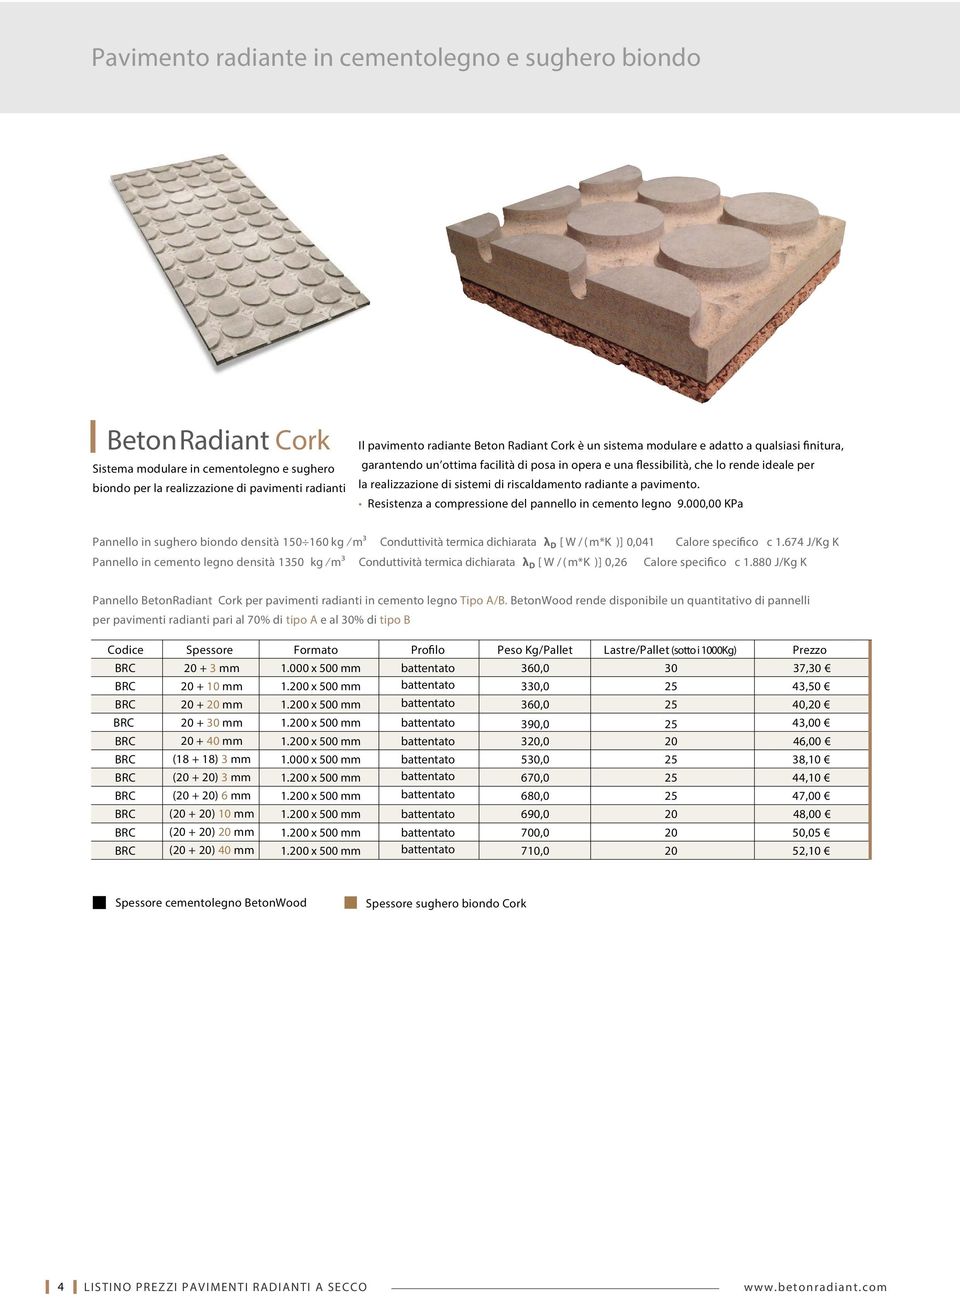 dichiarata λ D [ W / ( m*k )] 0,26 Calore specifico c 1.674 J/Kg K Calore specifico c 1.880 J/Kg K Pannello BetonRadiant Cork per pavimenti radianti in cemento legno Tipo A/B.